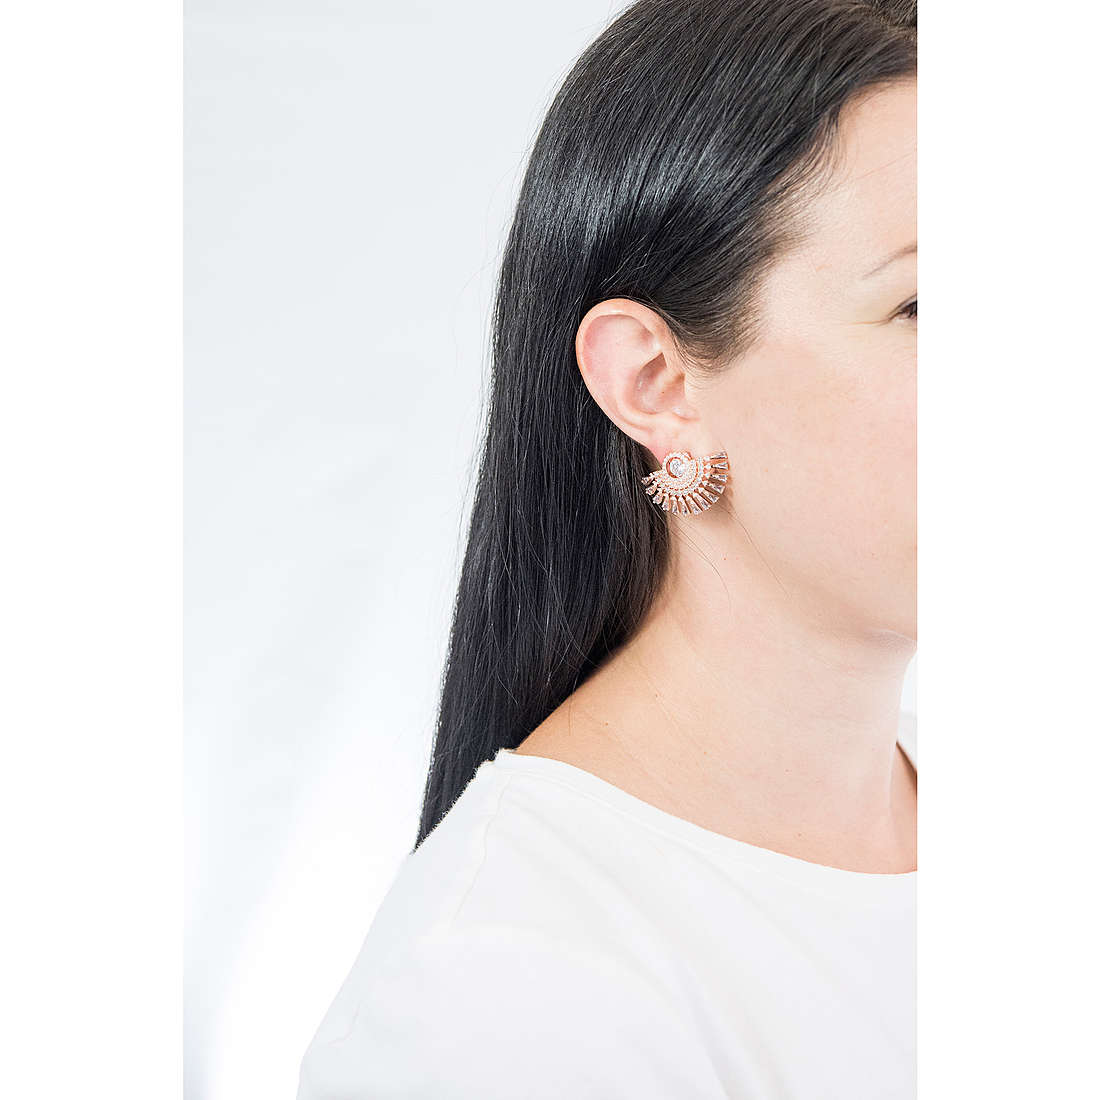 Swarovski earrings Sparkling woman 5558190 wearing